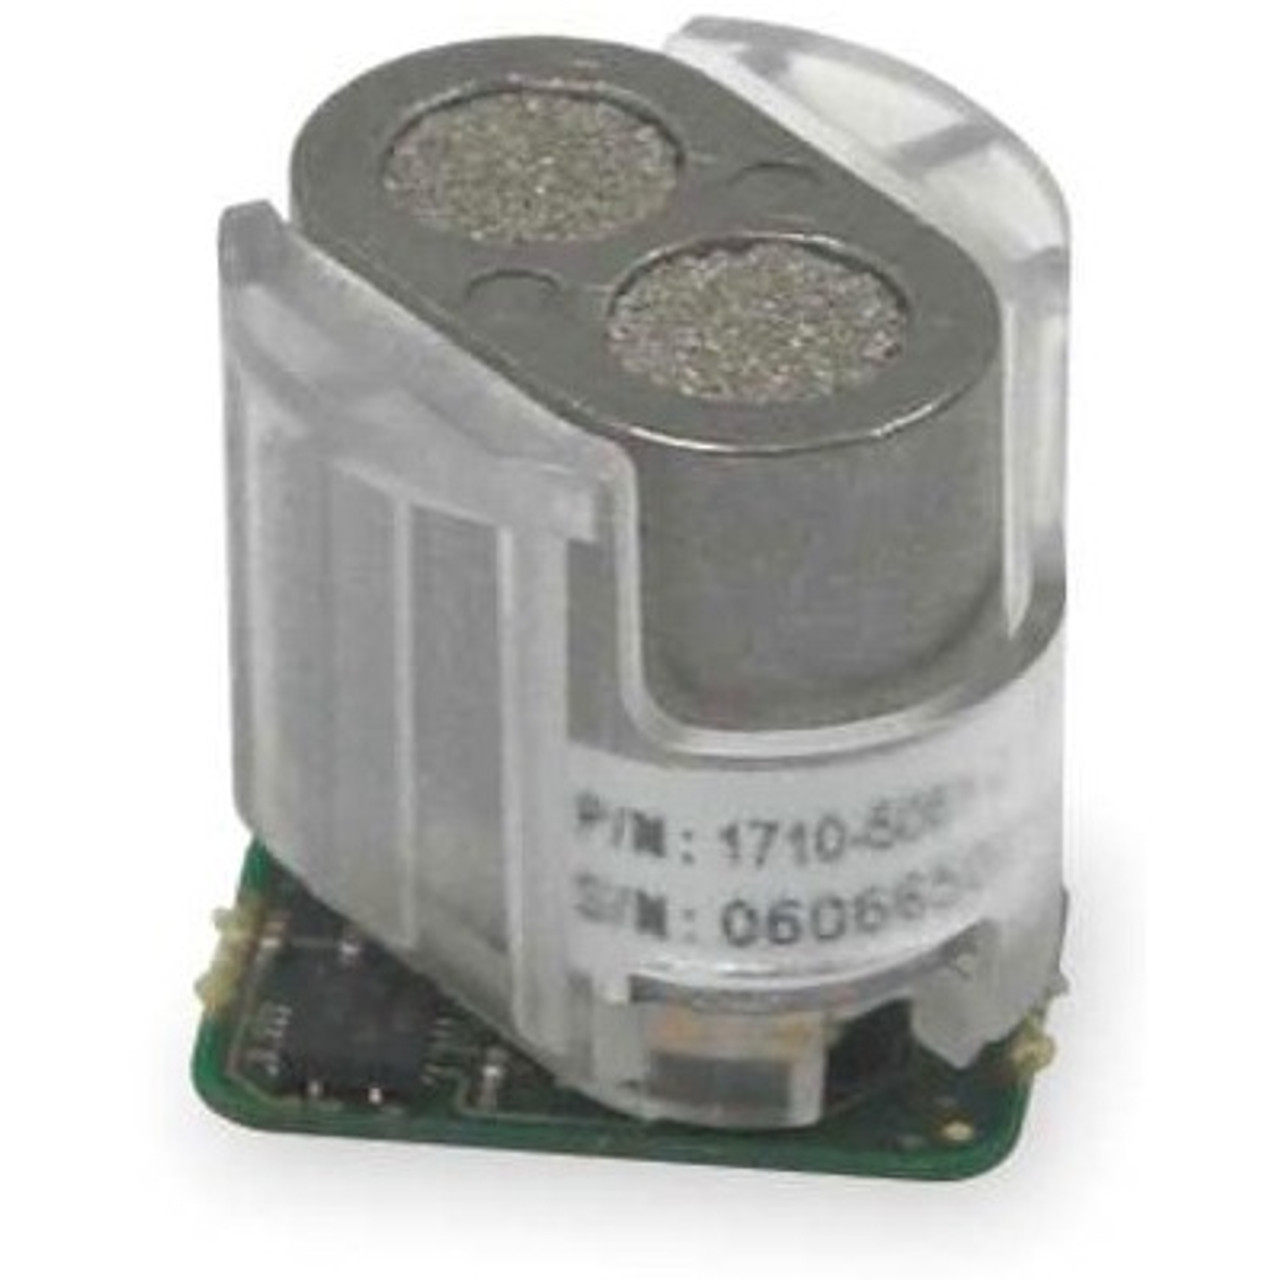 Sensor de Temperatura - Mod. LP - Edaltec Group